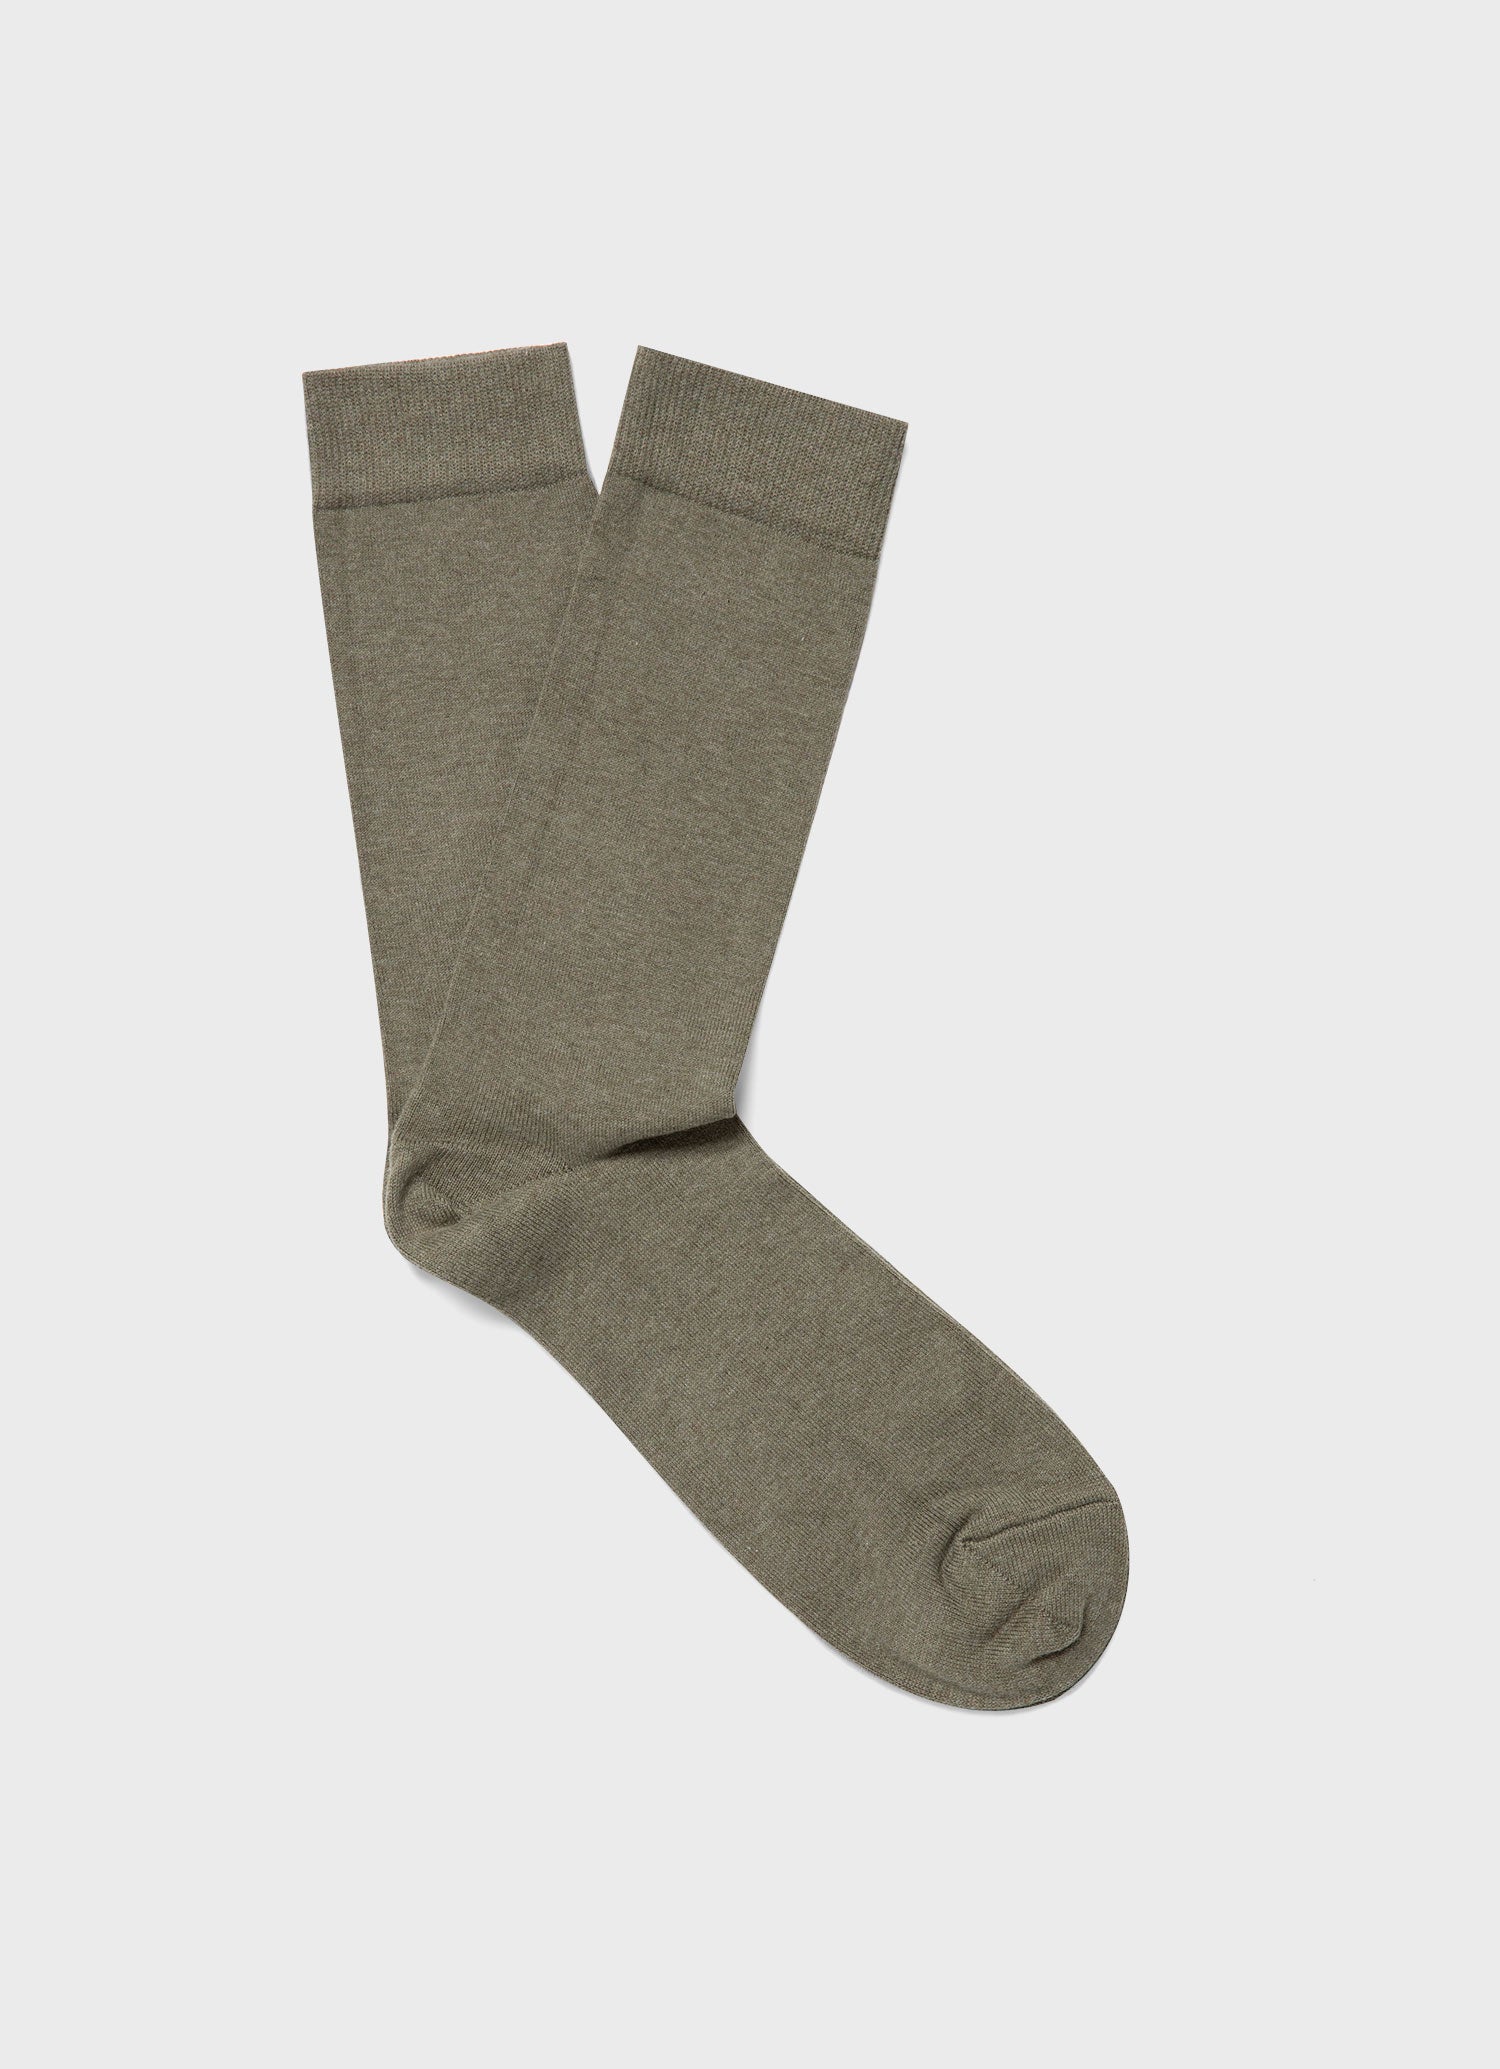 Men's Cotton Socks in Pale Khaki